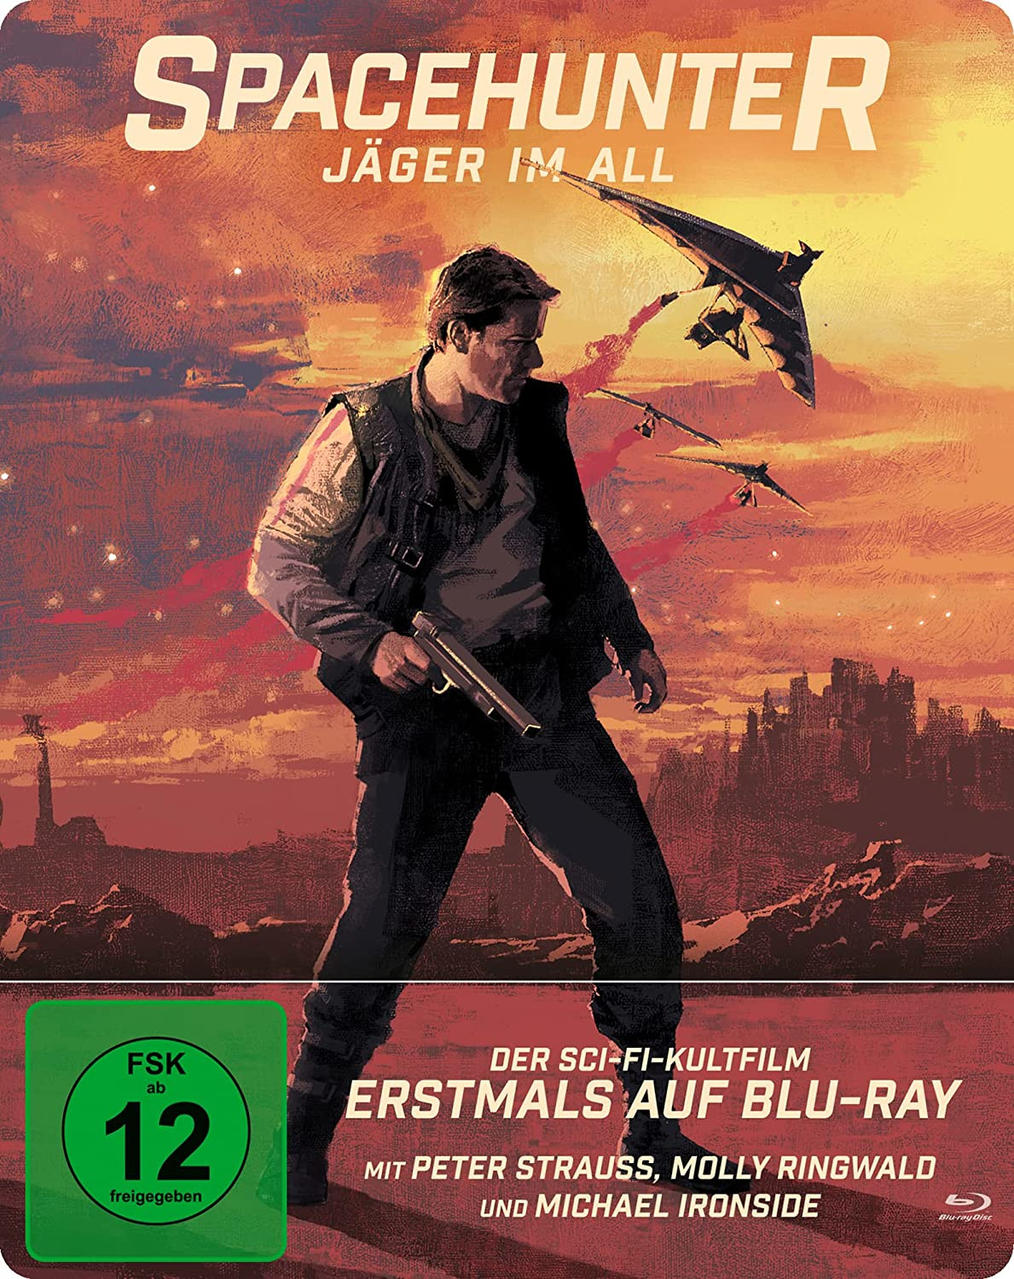 Blu-ray - im All Spacehunter Jäger